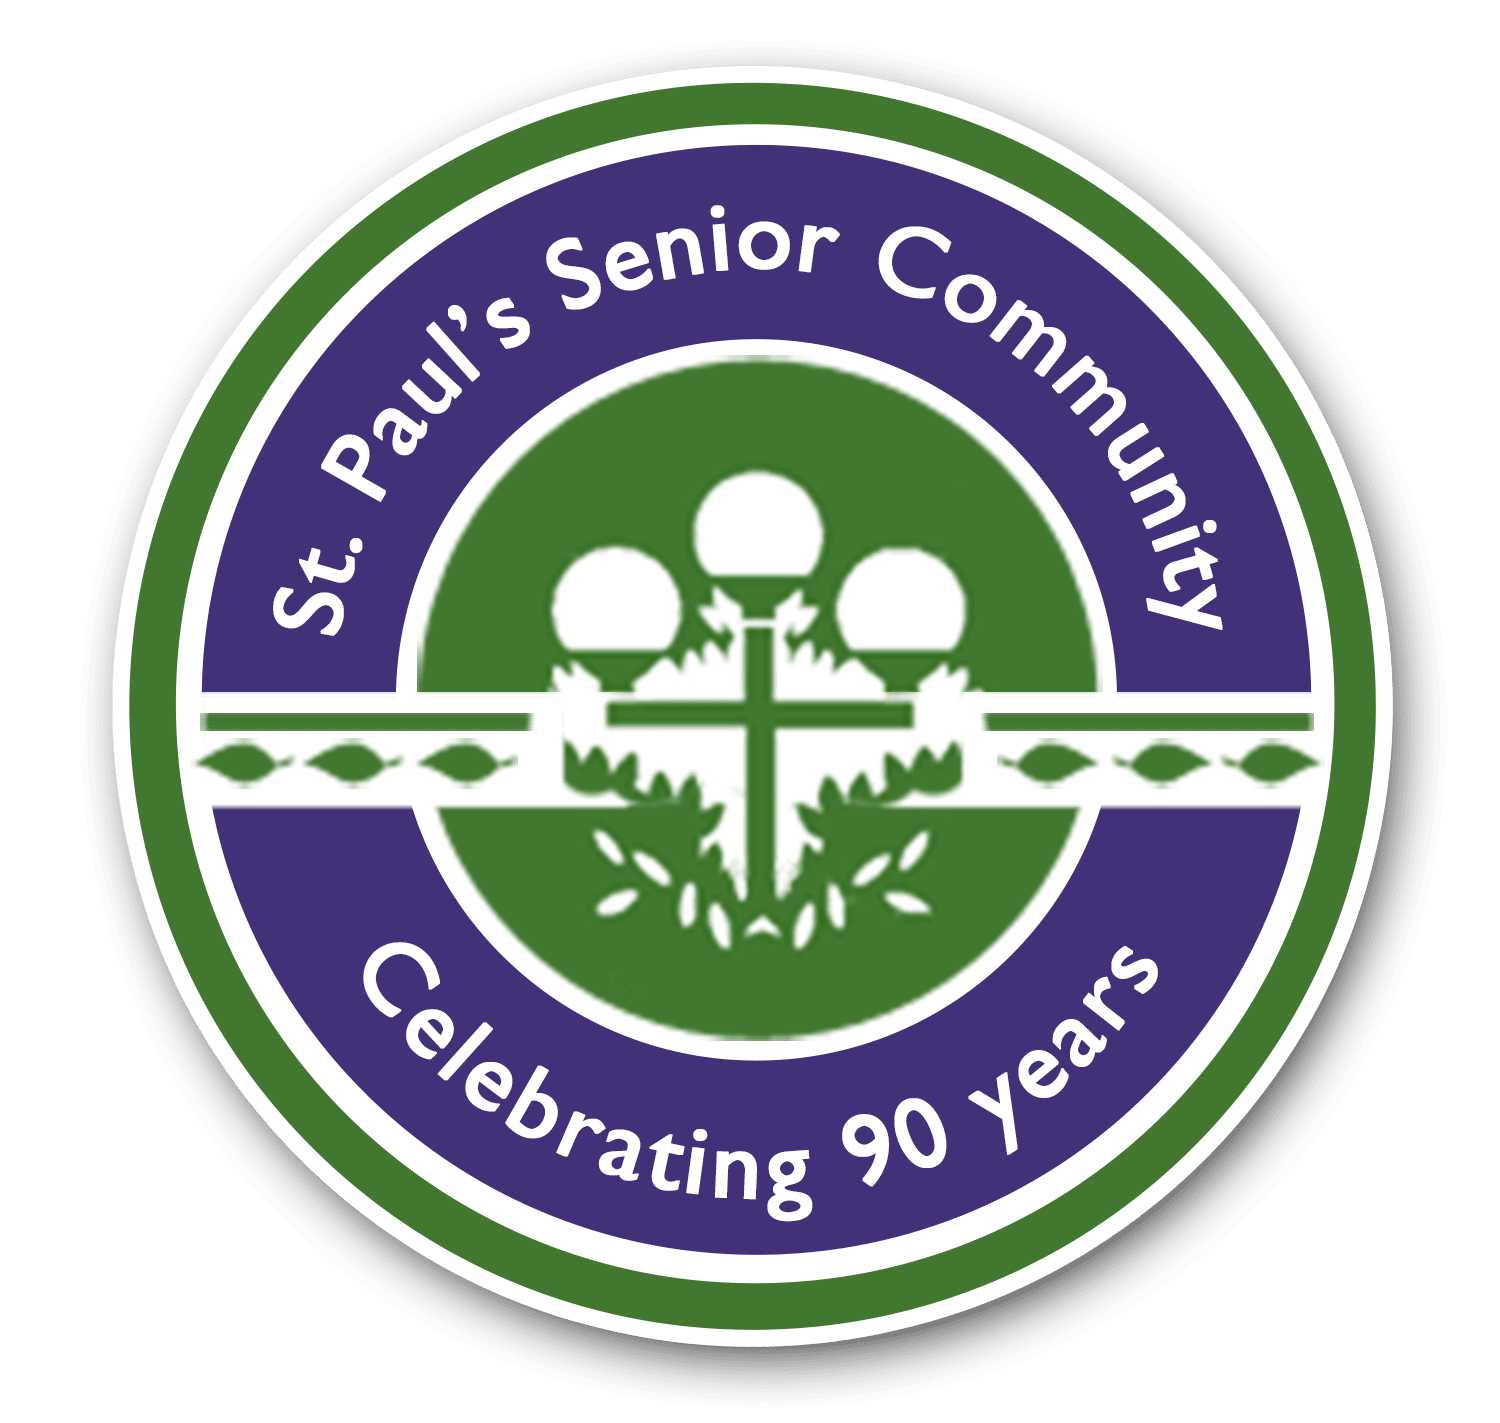 St. Paul's Senior Community